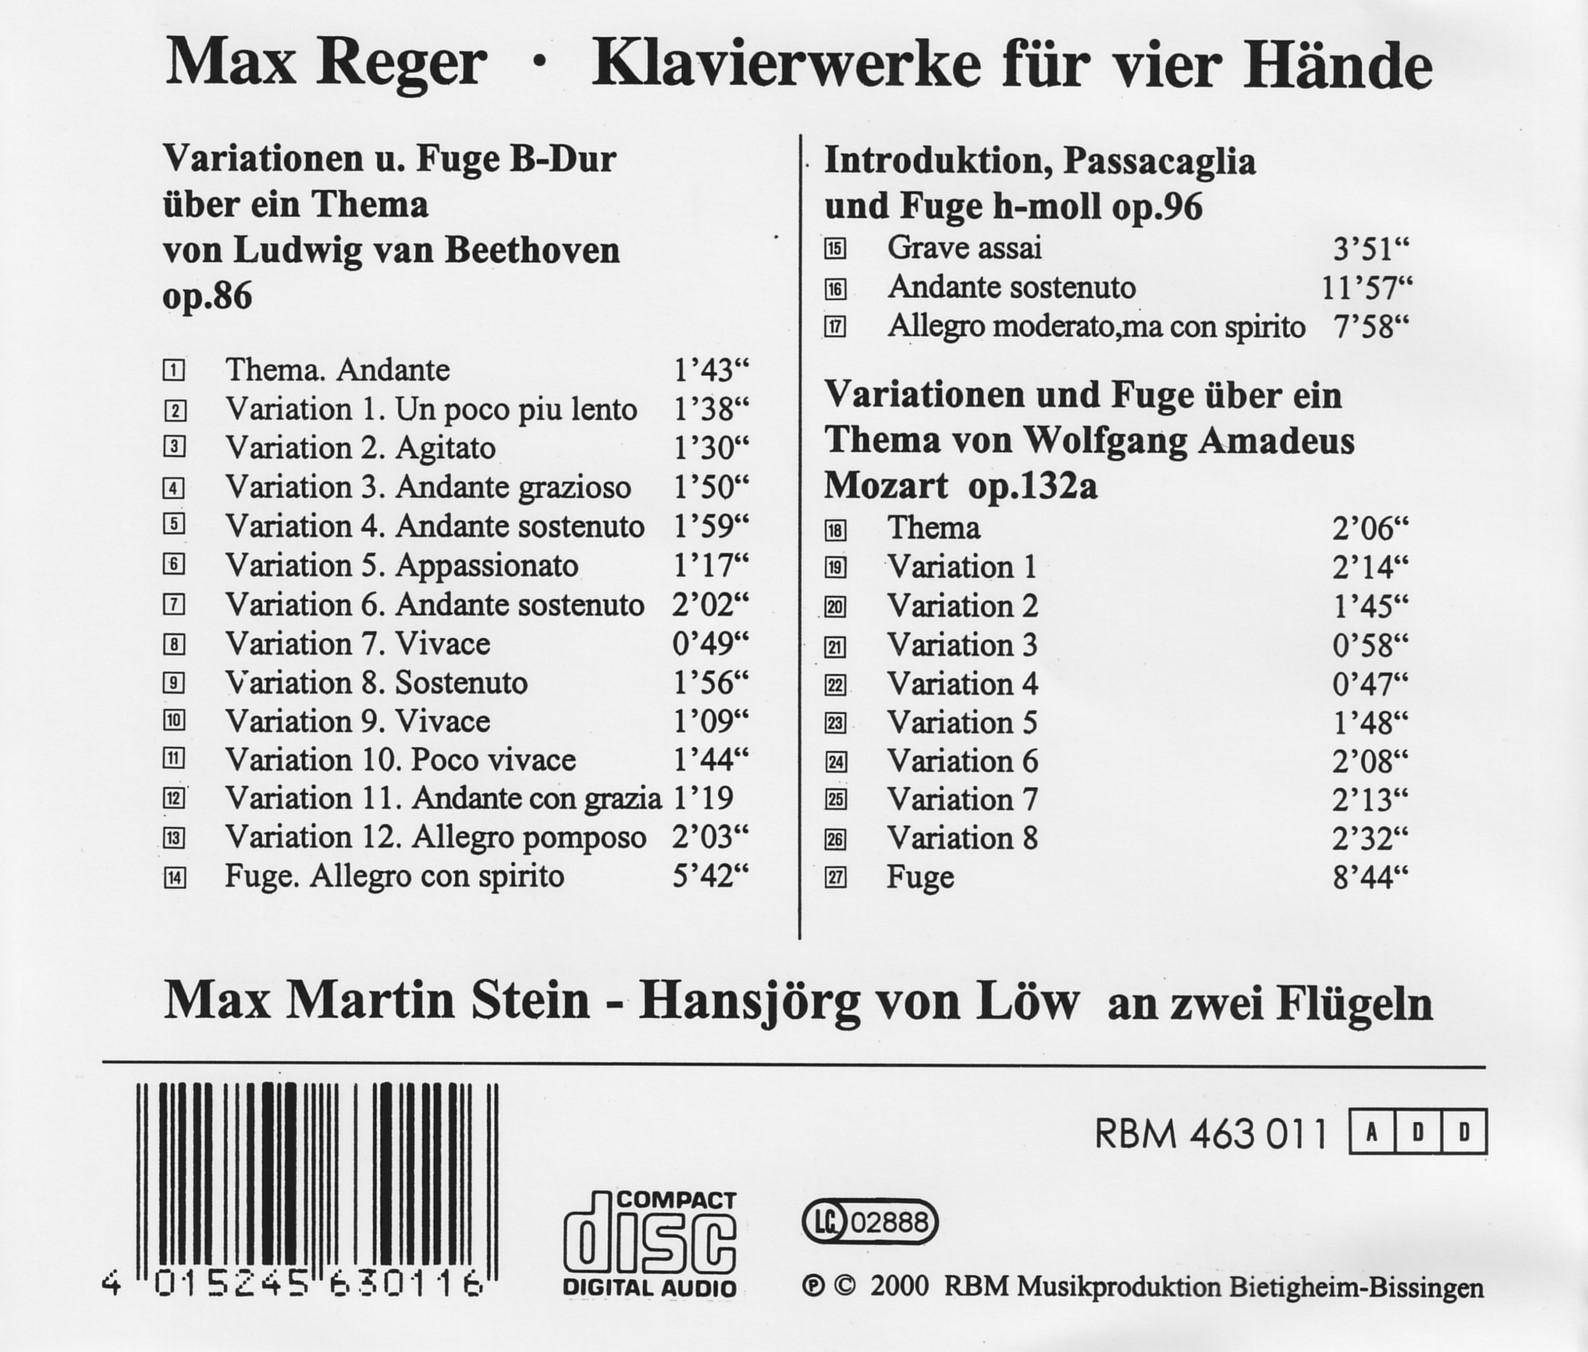 Max Reger - Klavierwerke für vier Hände